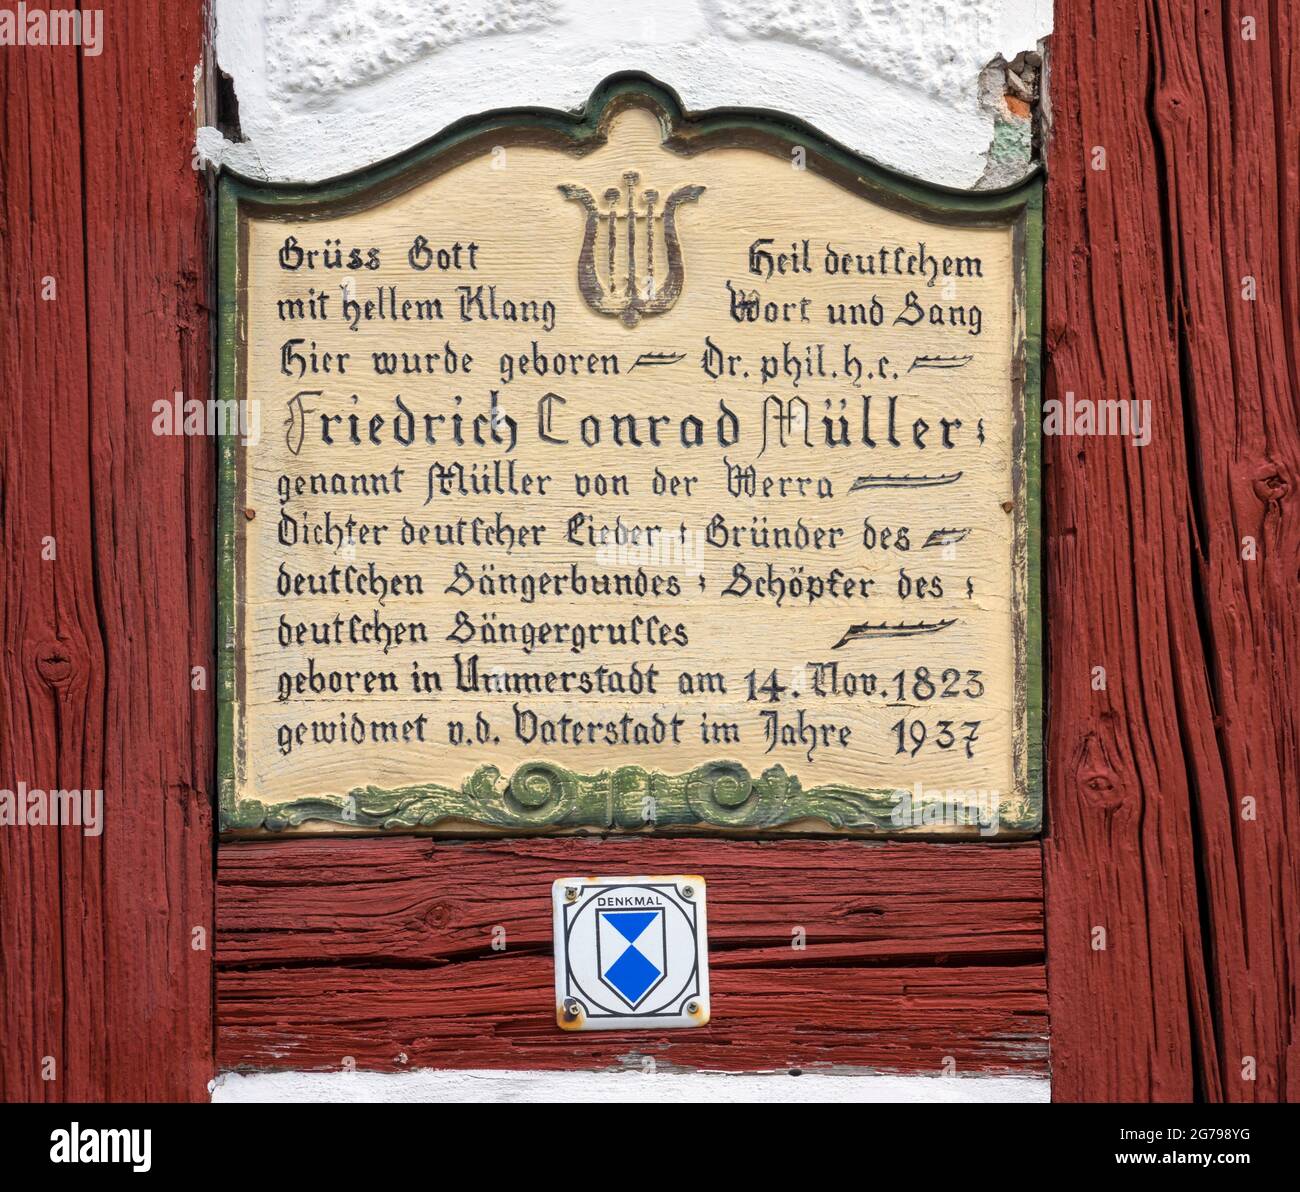 Ummerstadt ist (2019) die kleinste Stadt Thüringens. Die historische Altstadt von Ummerstadt mit ihren vielen Fachwerkhäusern ist ein denkmalgeschütztes Gebäude. Besonders interessant ist der Marktplatz am oberen Ende, auf dem Friedrich Konrad Müller geboren wurde. Müller, der sich "Müller von der Werra" nannte, ist Autor vieler patriotischer Gedichte und Lieder. Stockfoto